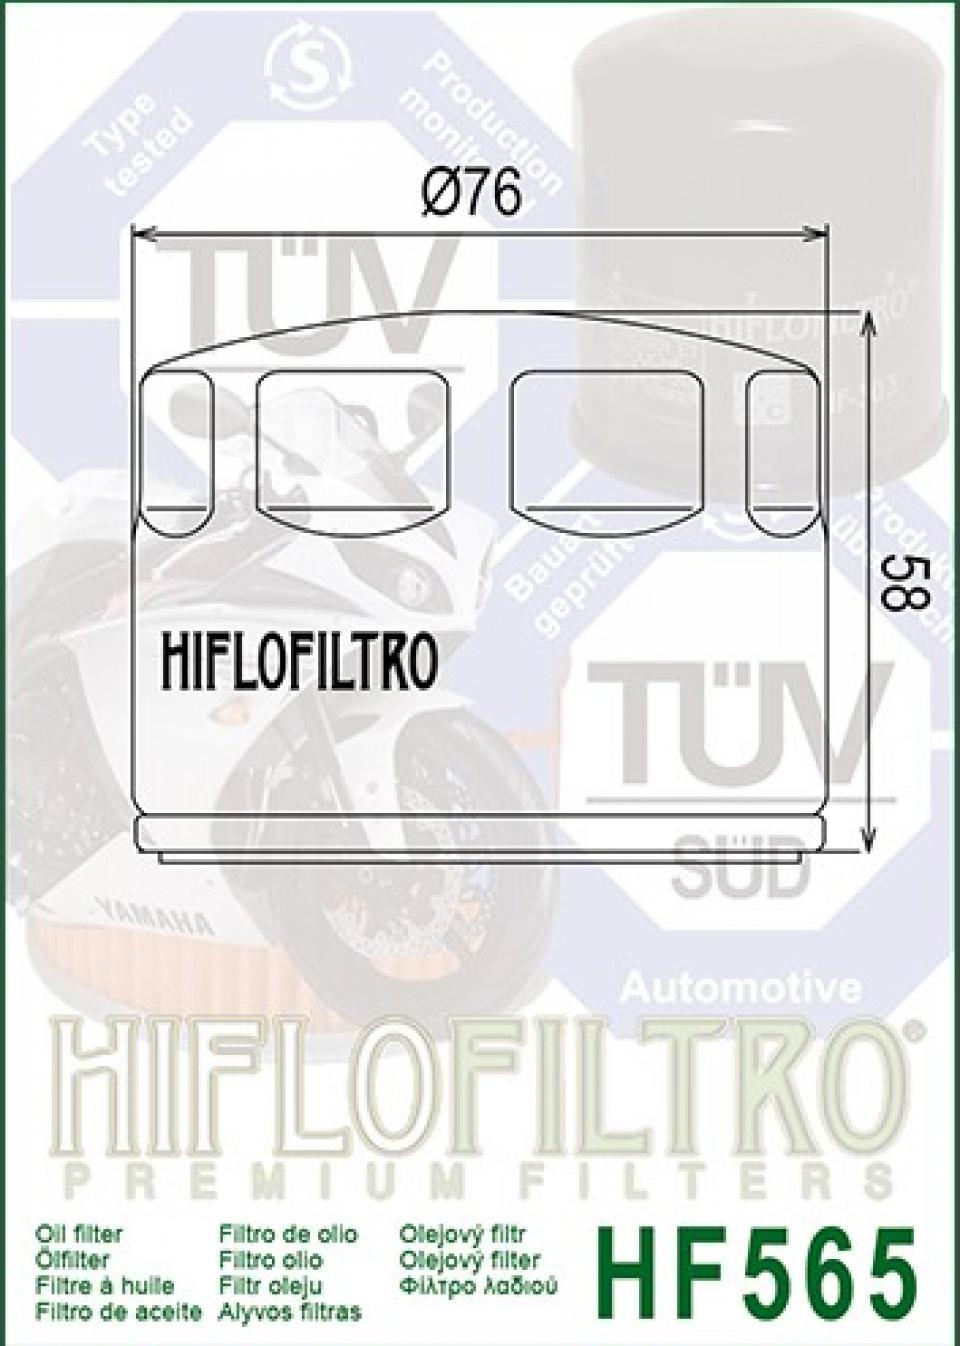 Filtre à huile Hiflo Filtro pour Moto Aprilia 1200 Smv Dorsoduro 2011-2015 Neuf